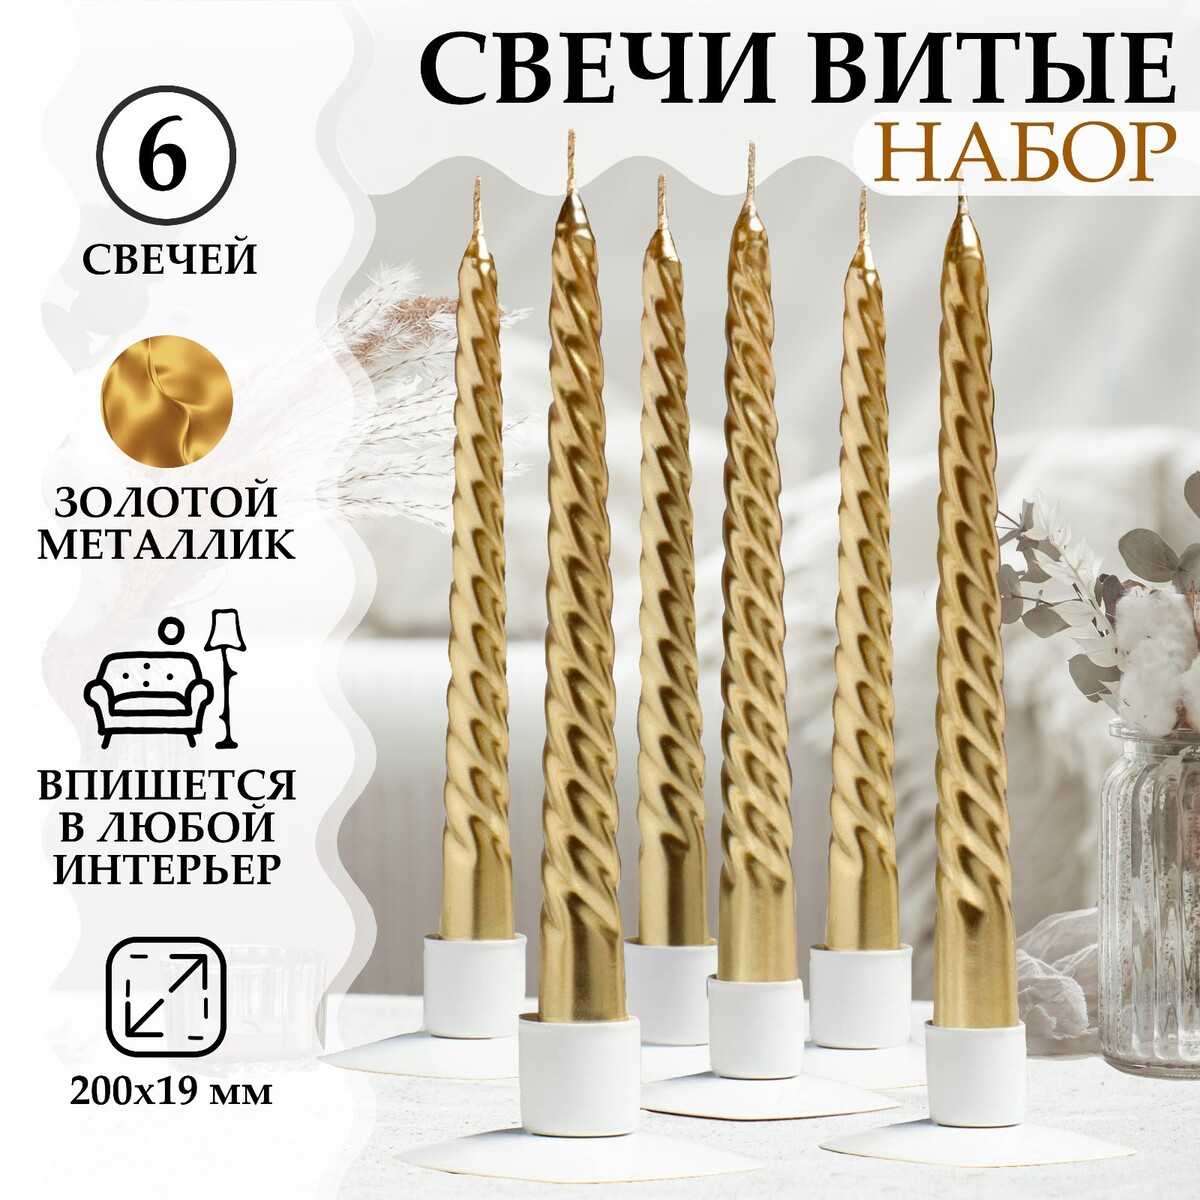 Набор свечей витых, 1,9х 20 см, 6 штук, золотой металлик набор свечей витых 1 5х 15 см 2 штуки золотой металлик новый год 3